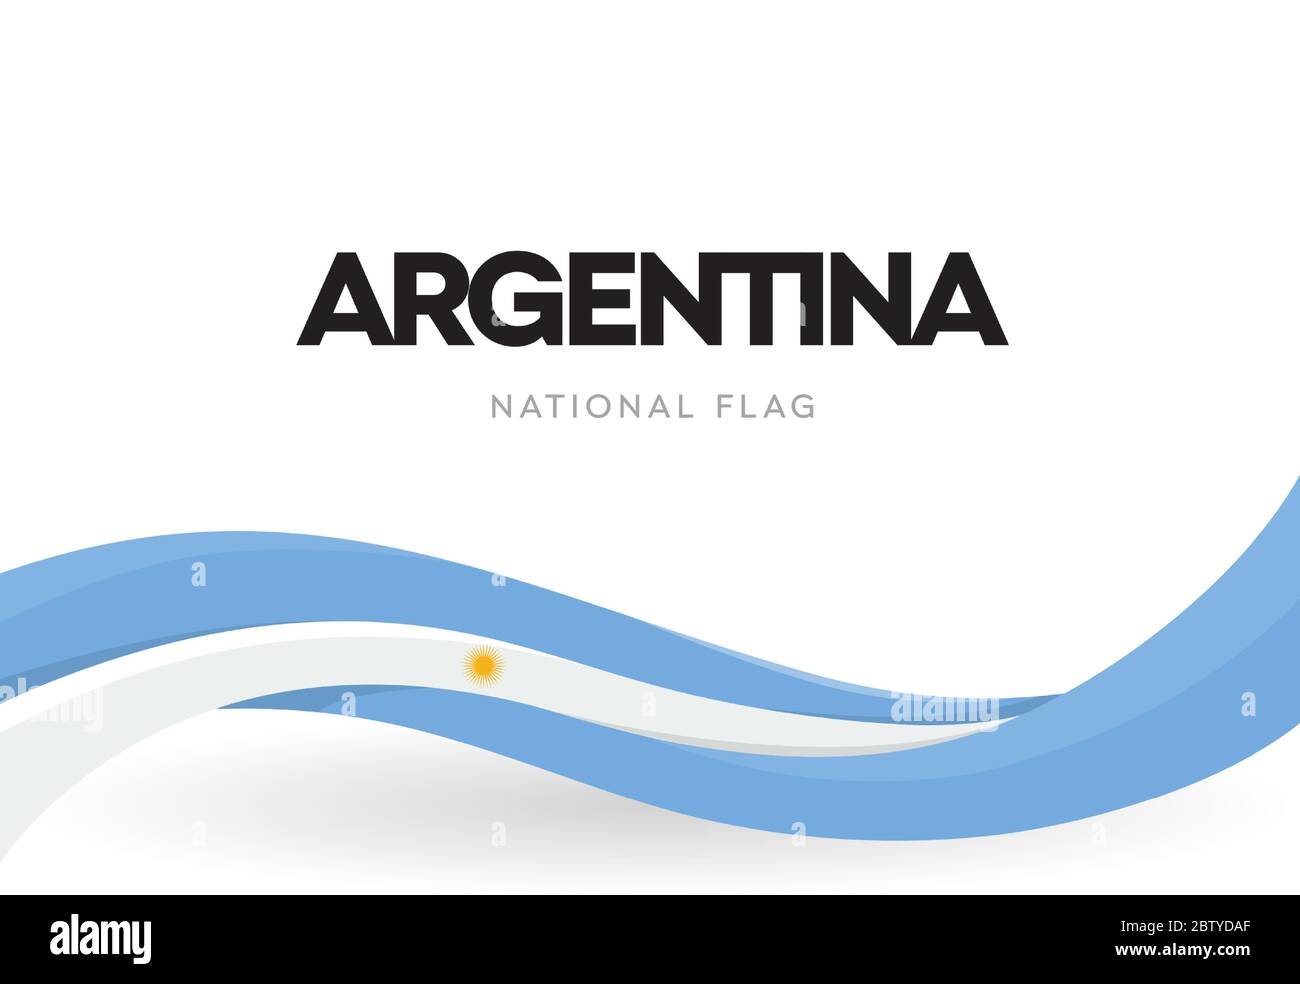 Argentinisches winkendes Flaggen-Banner. Argentinien patriotische blau-weiße Band Poster. Das Symbol der Argentinischen Republik. Unabhängigkeitstag Stock Vektor